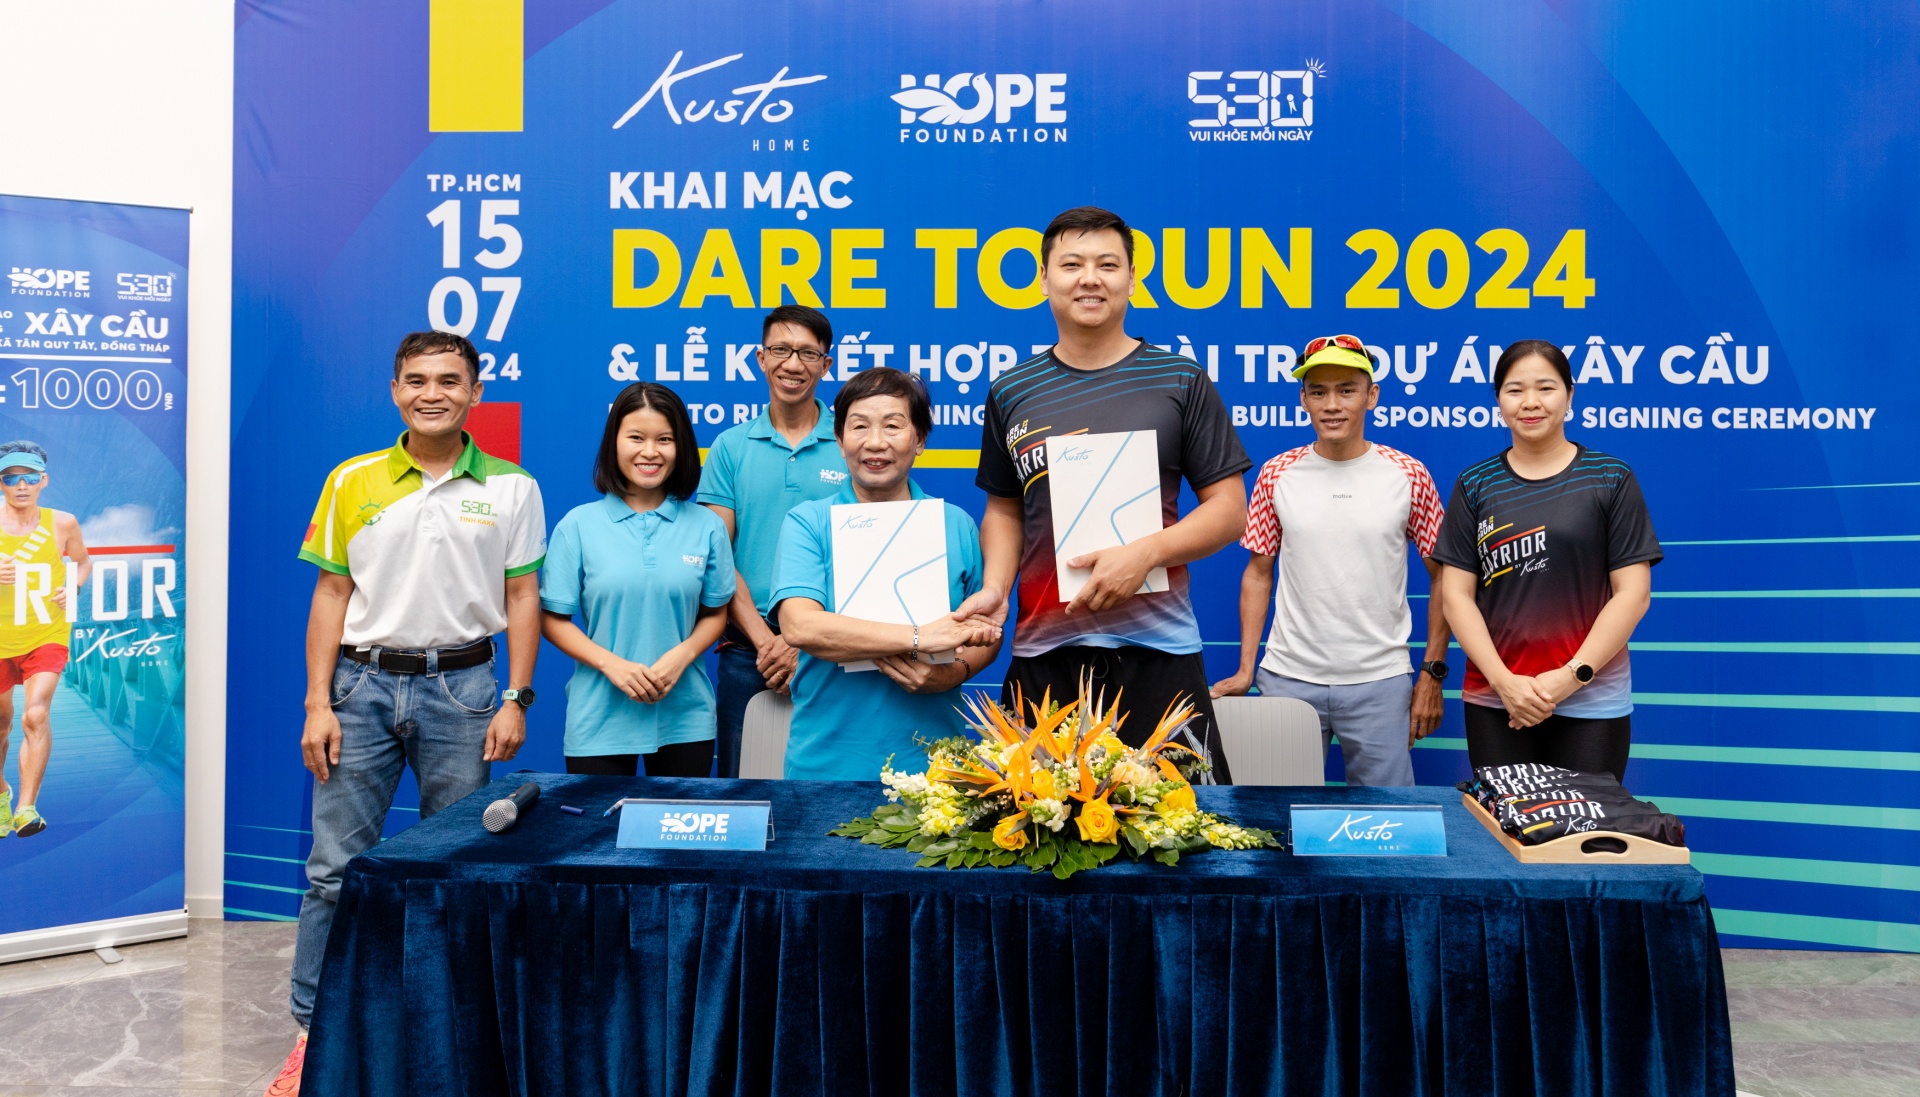 Vietnamese ultramarathoners make history with fundraising